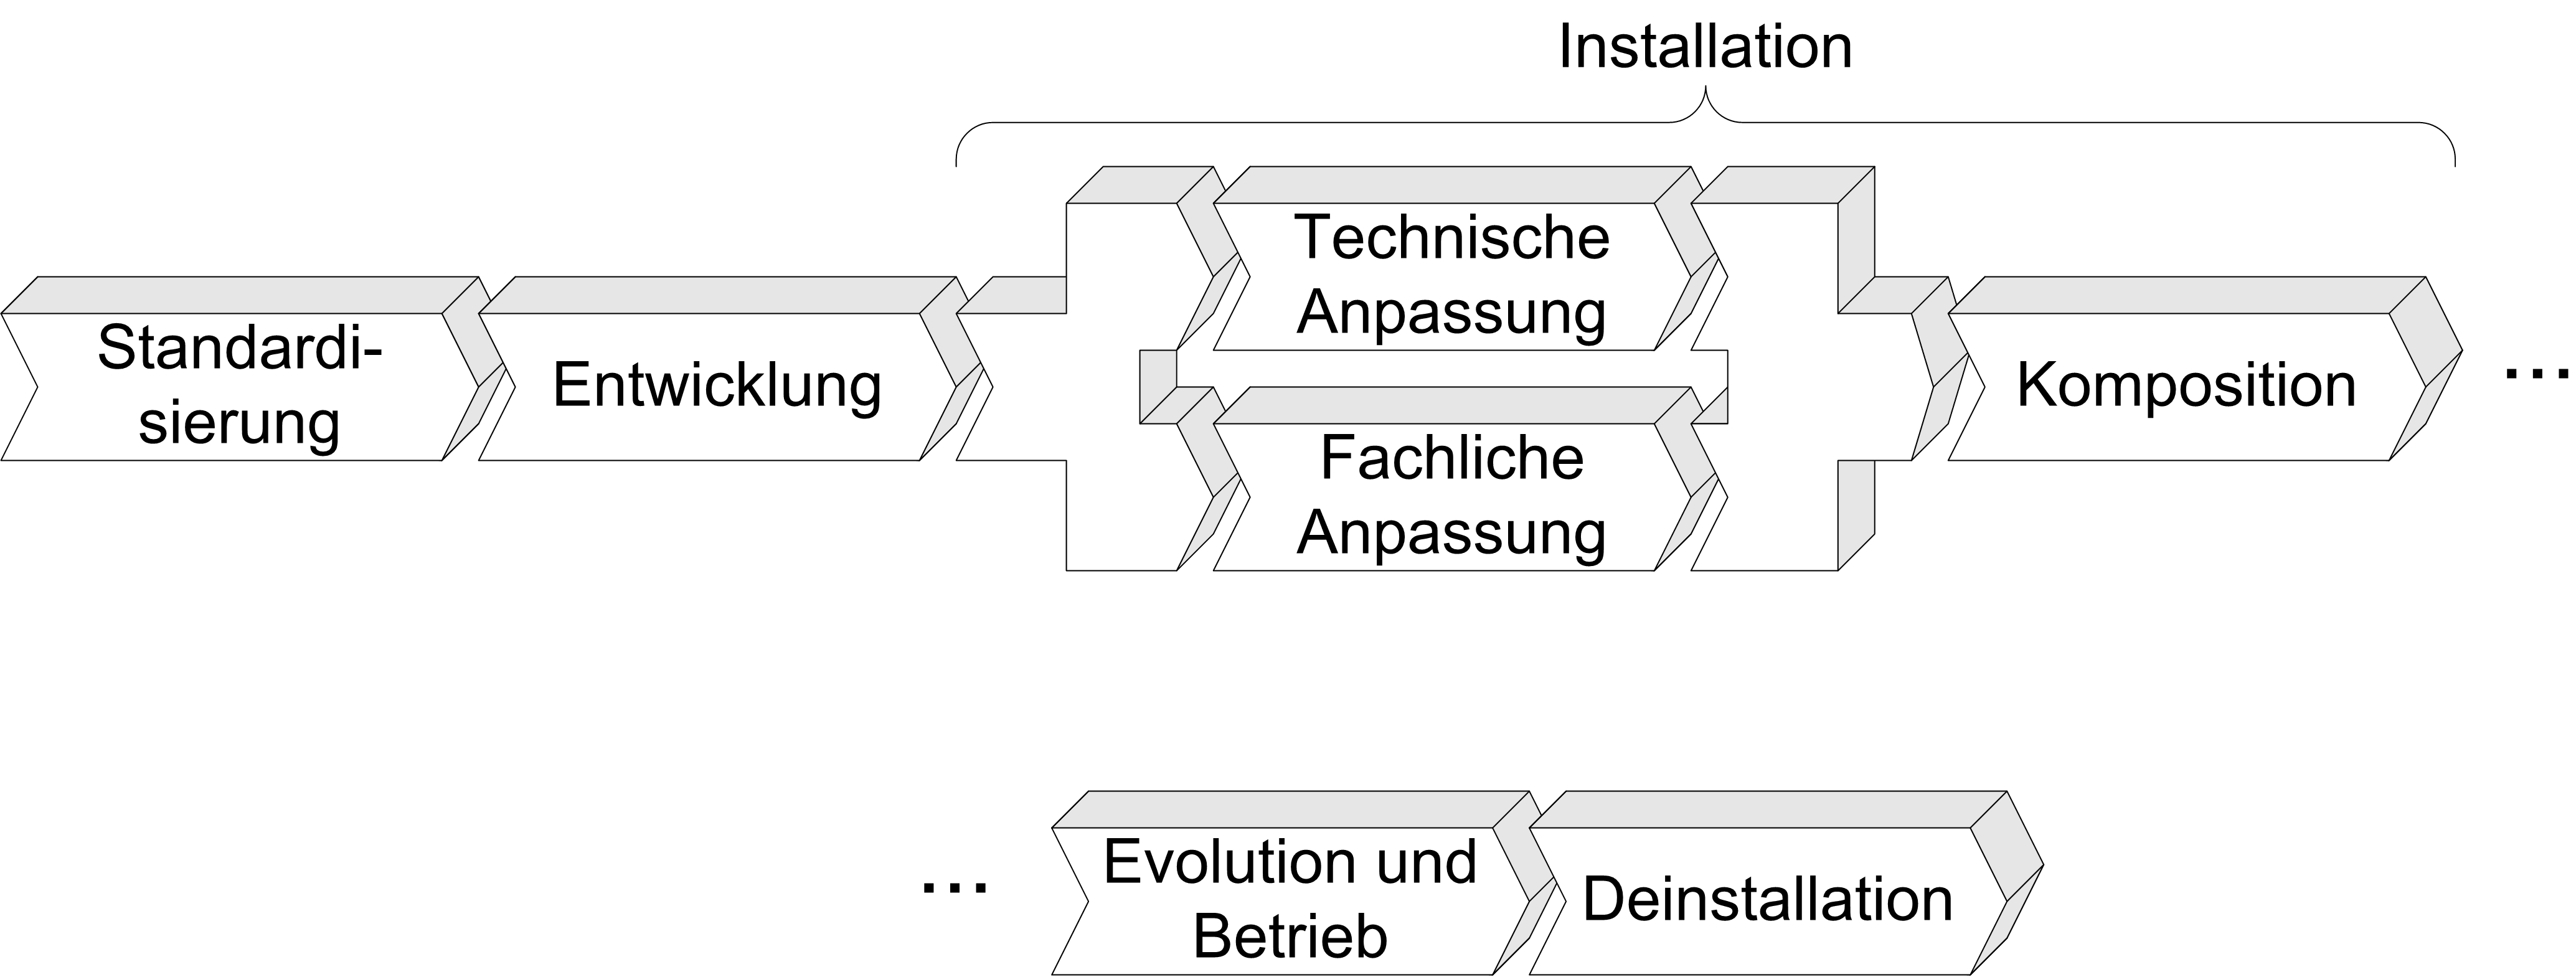 Lebenszyklus einer Softwarekomponente